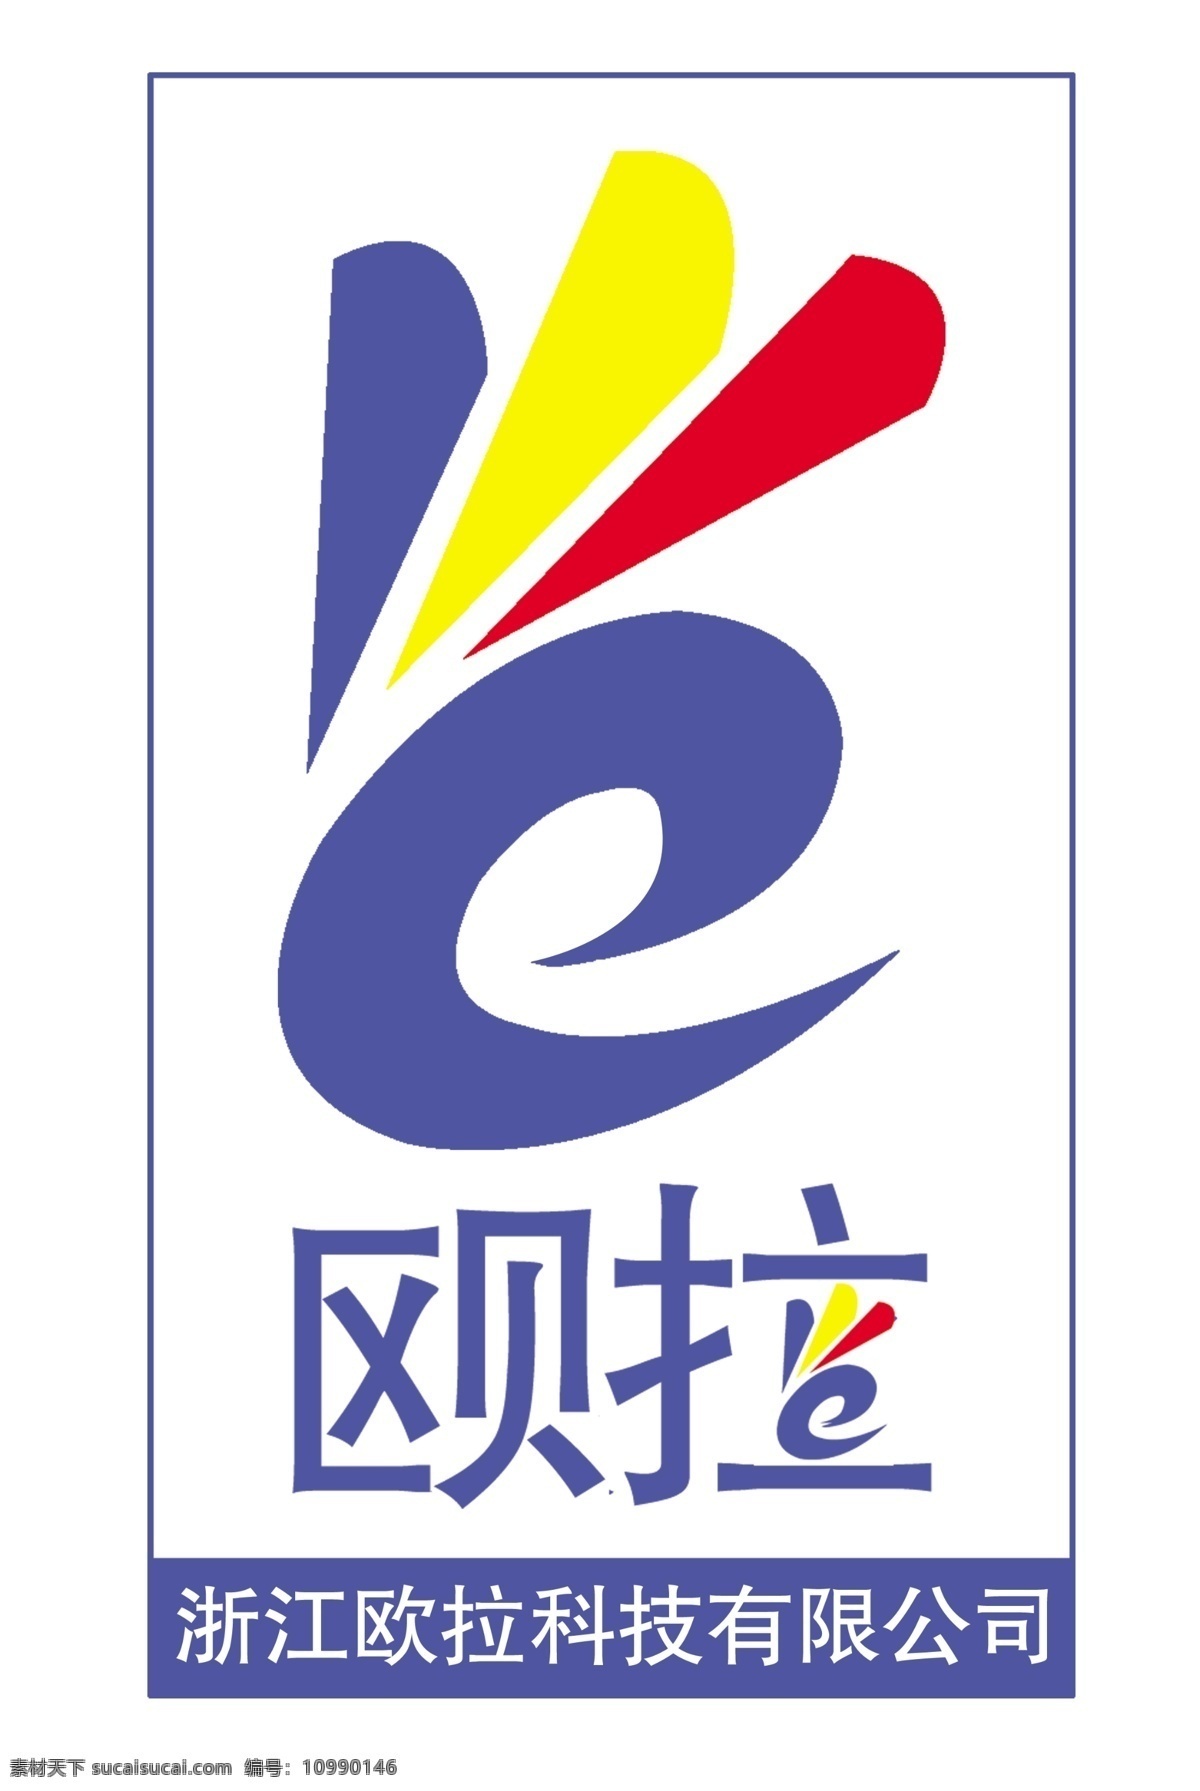 公司 商标 logo设计 胜利 手势 欧拉 e 三原色 矢量图